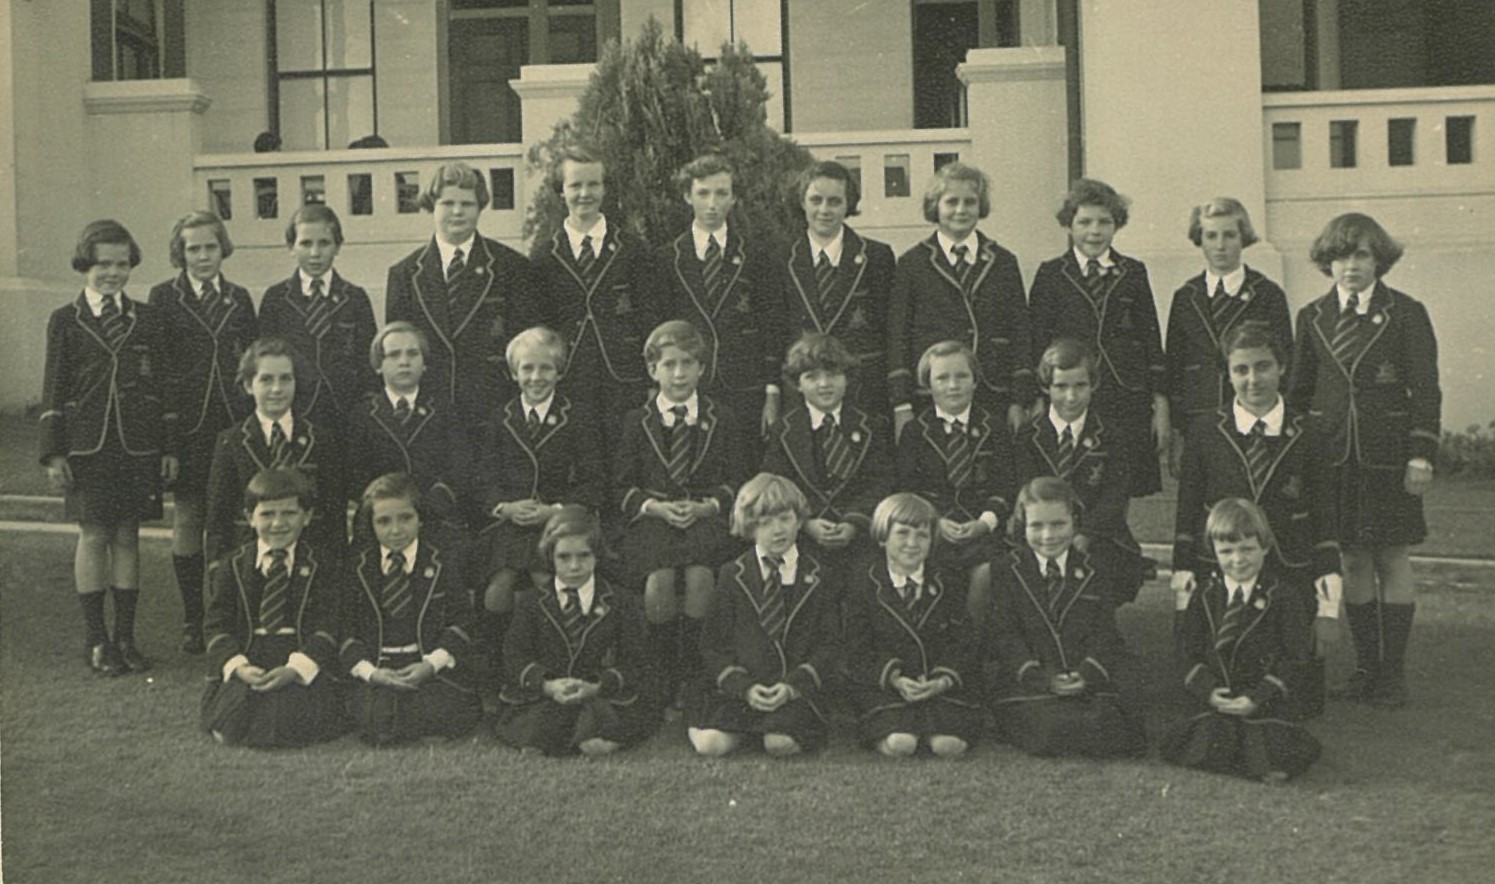 1954 Primary Grades Formal